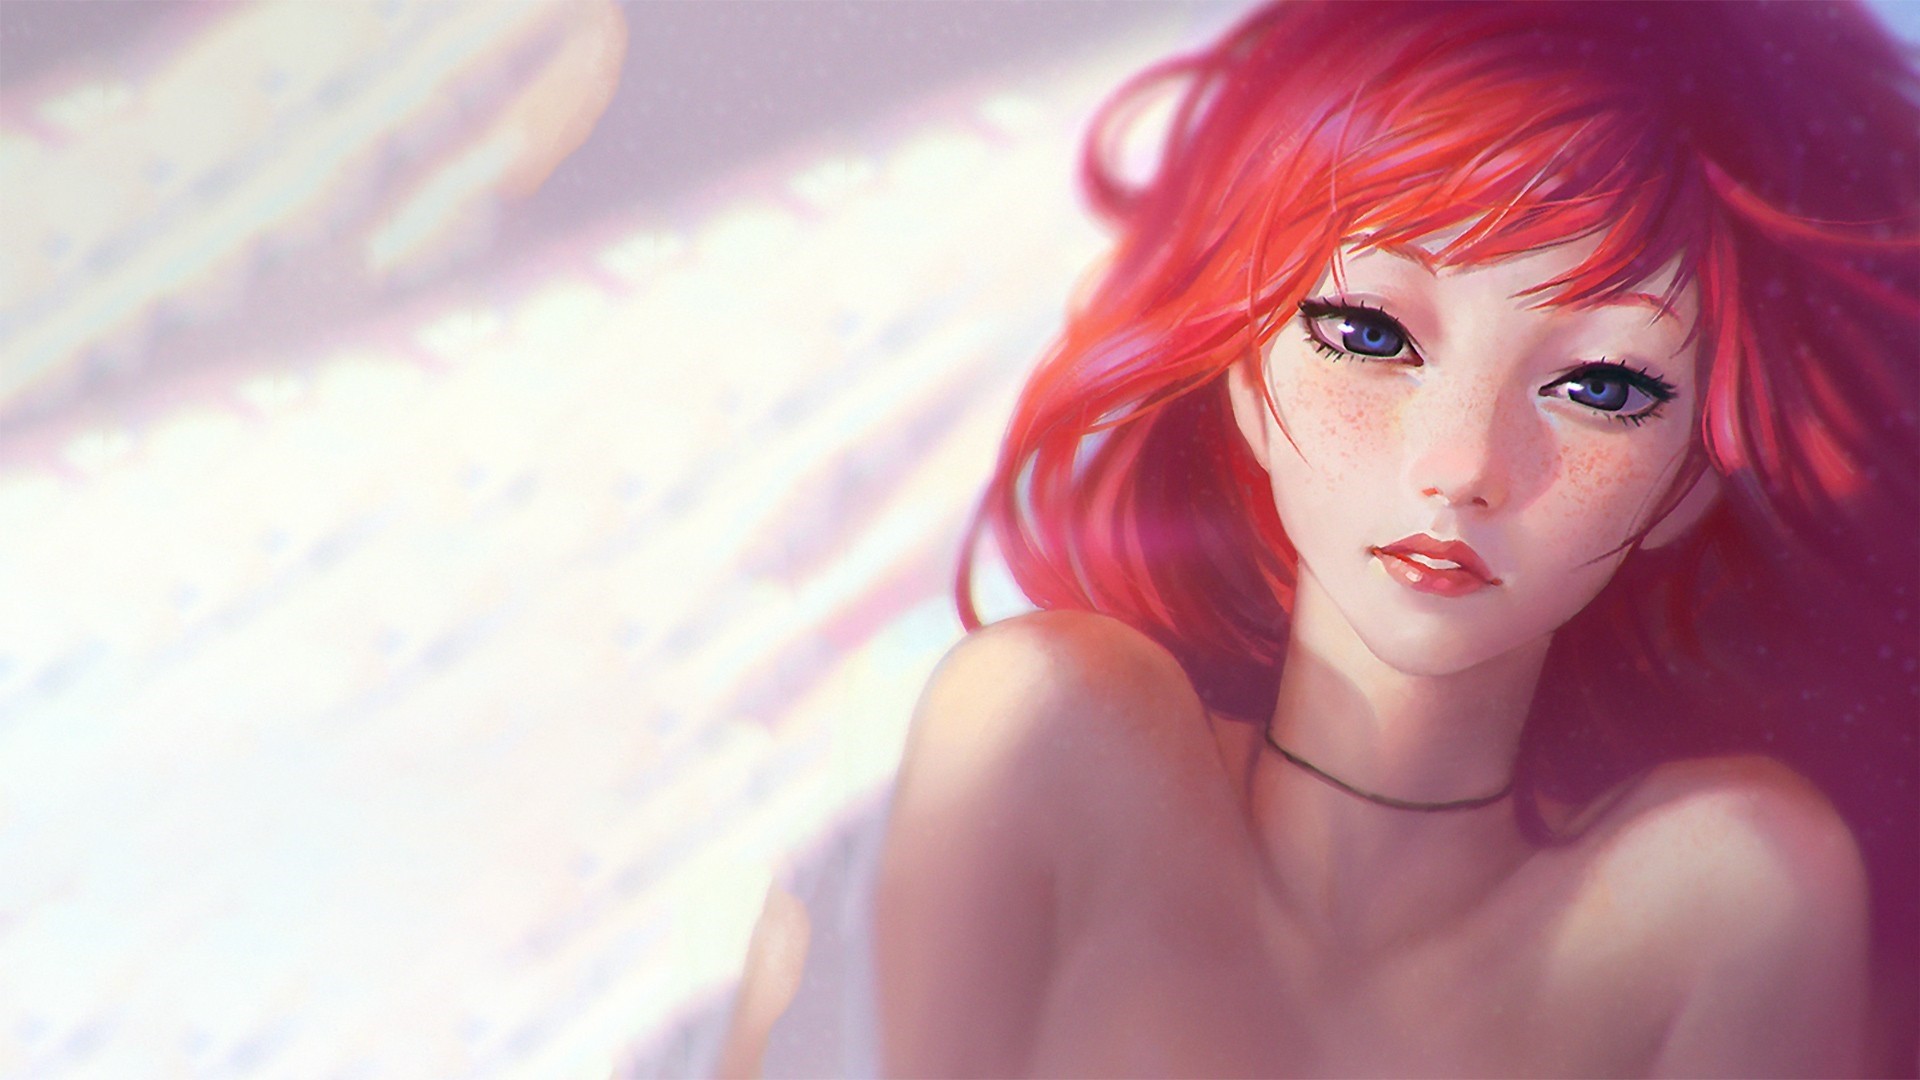 Red Hair Anime Girl Wallpaper for pc